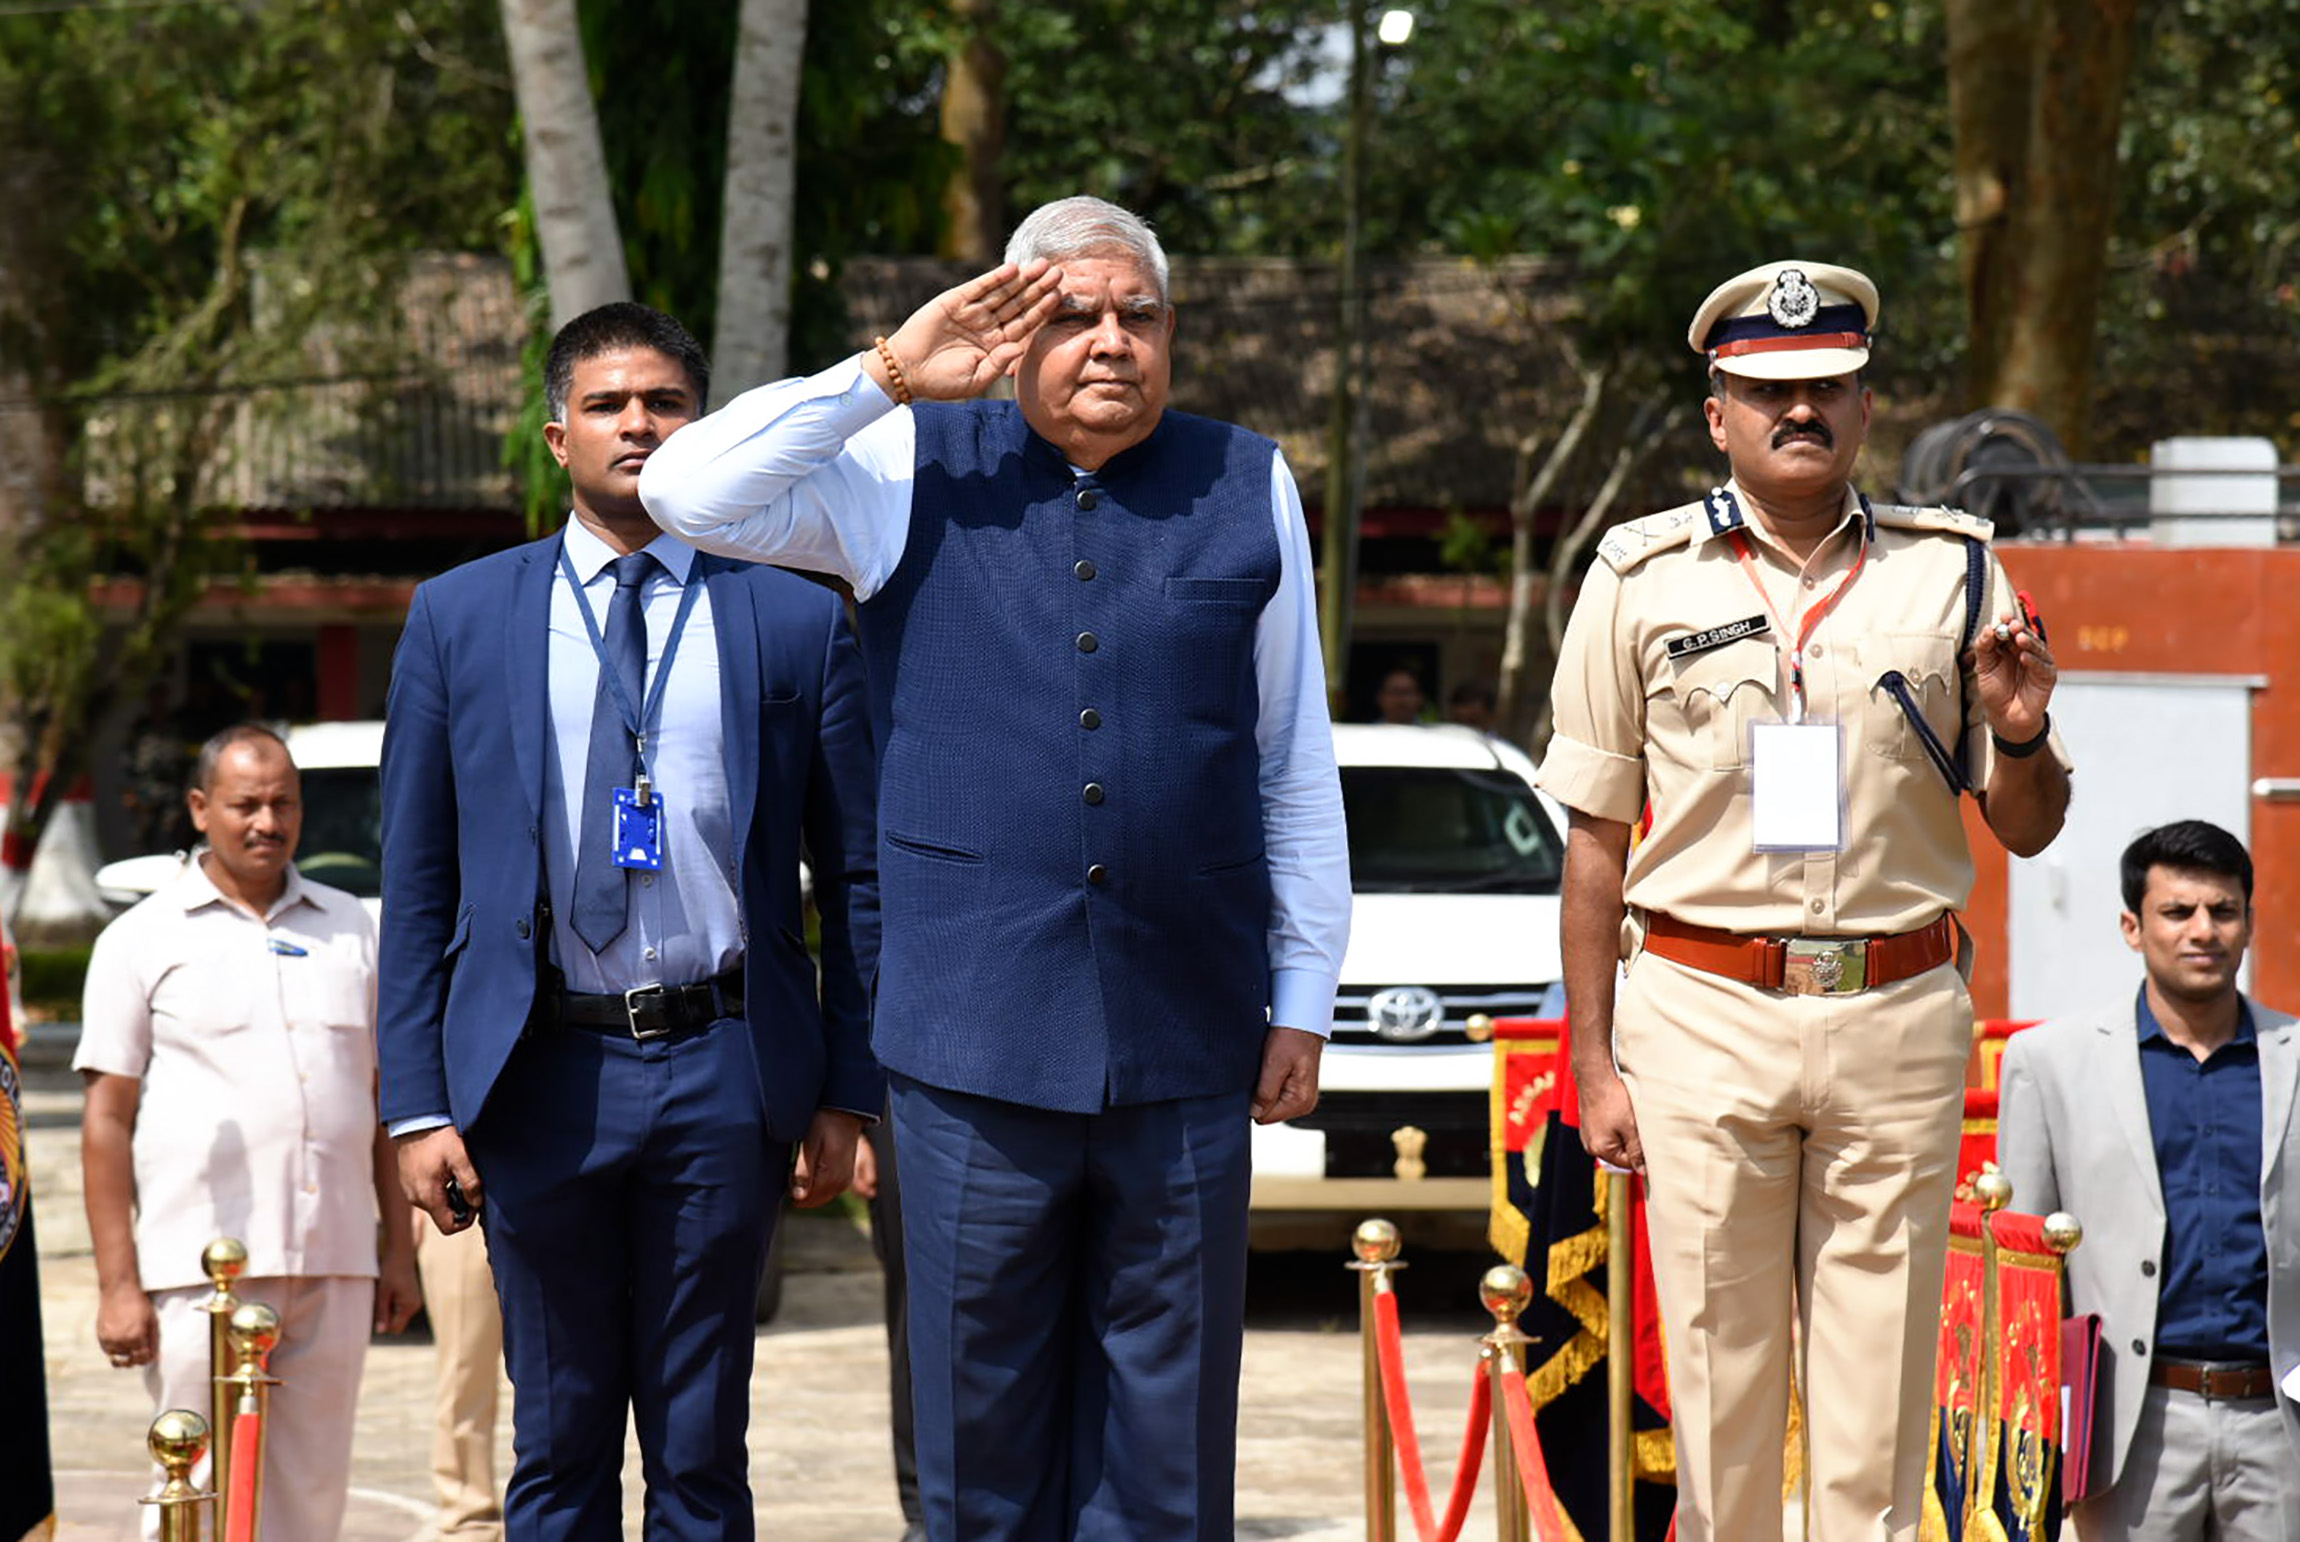 22 सितंबर, 2022 को गुवाहाटी, असम पहुंचने पर गार्ड ऑफ ऑनर का निरीक्षण करते हुए उपराष्ट्रपति, श्री जगदीप धनखड़।